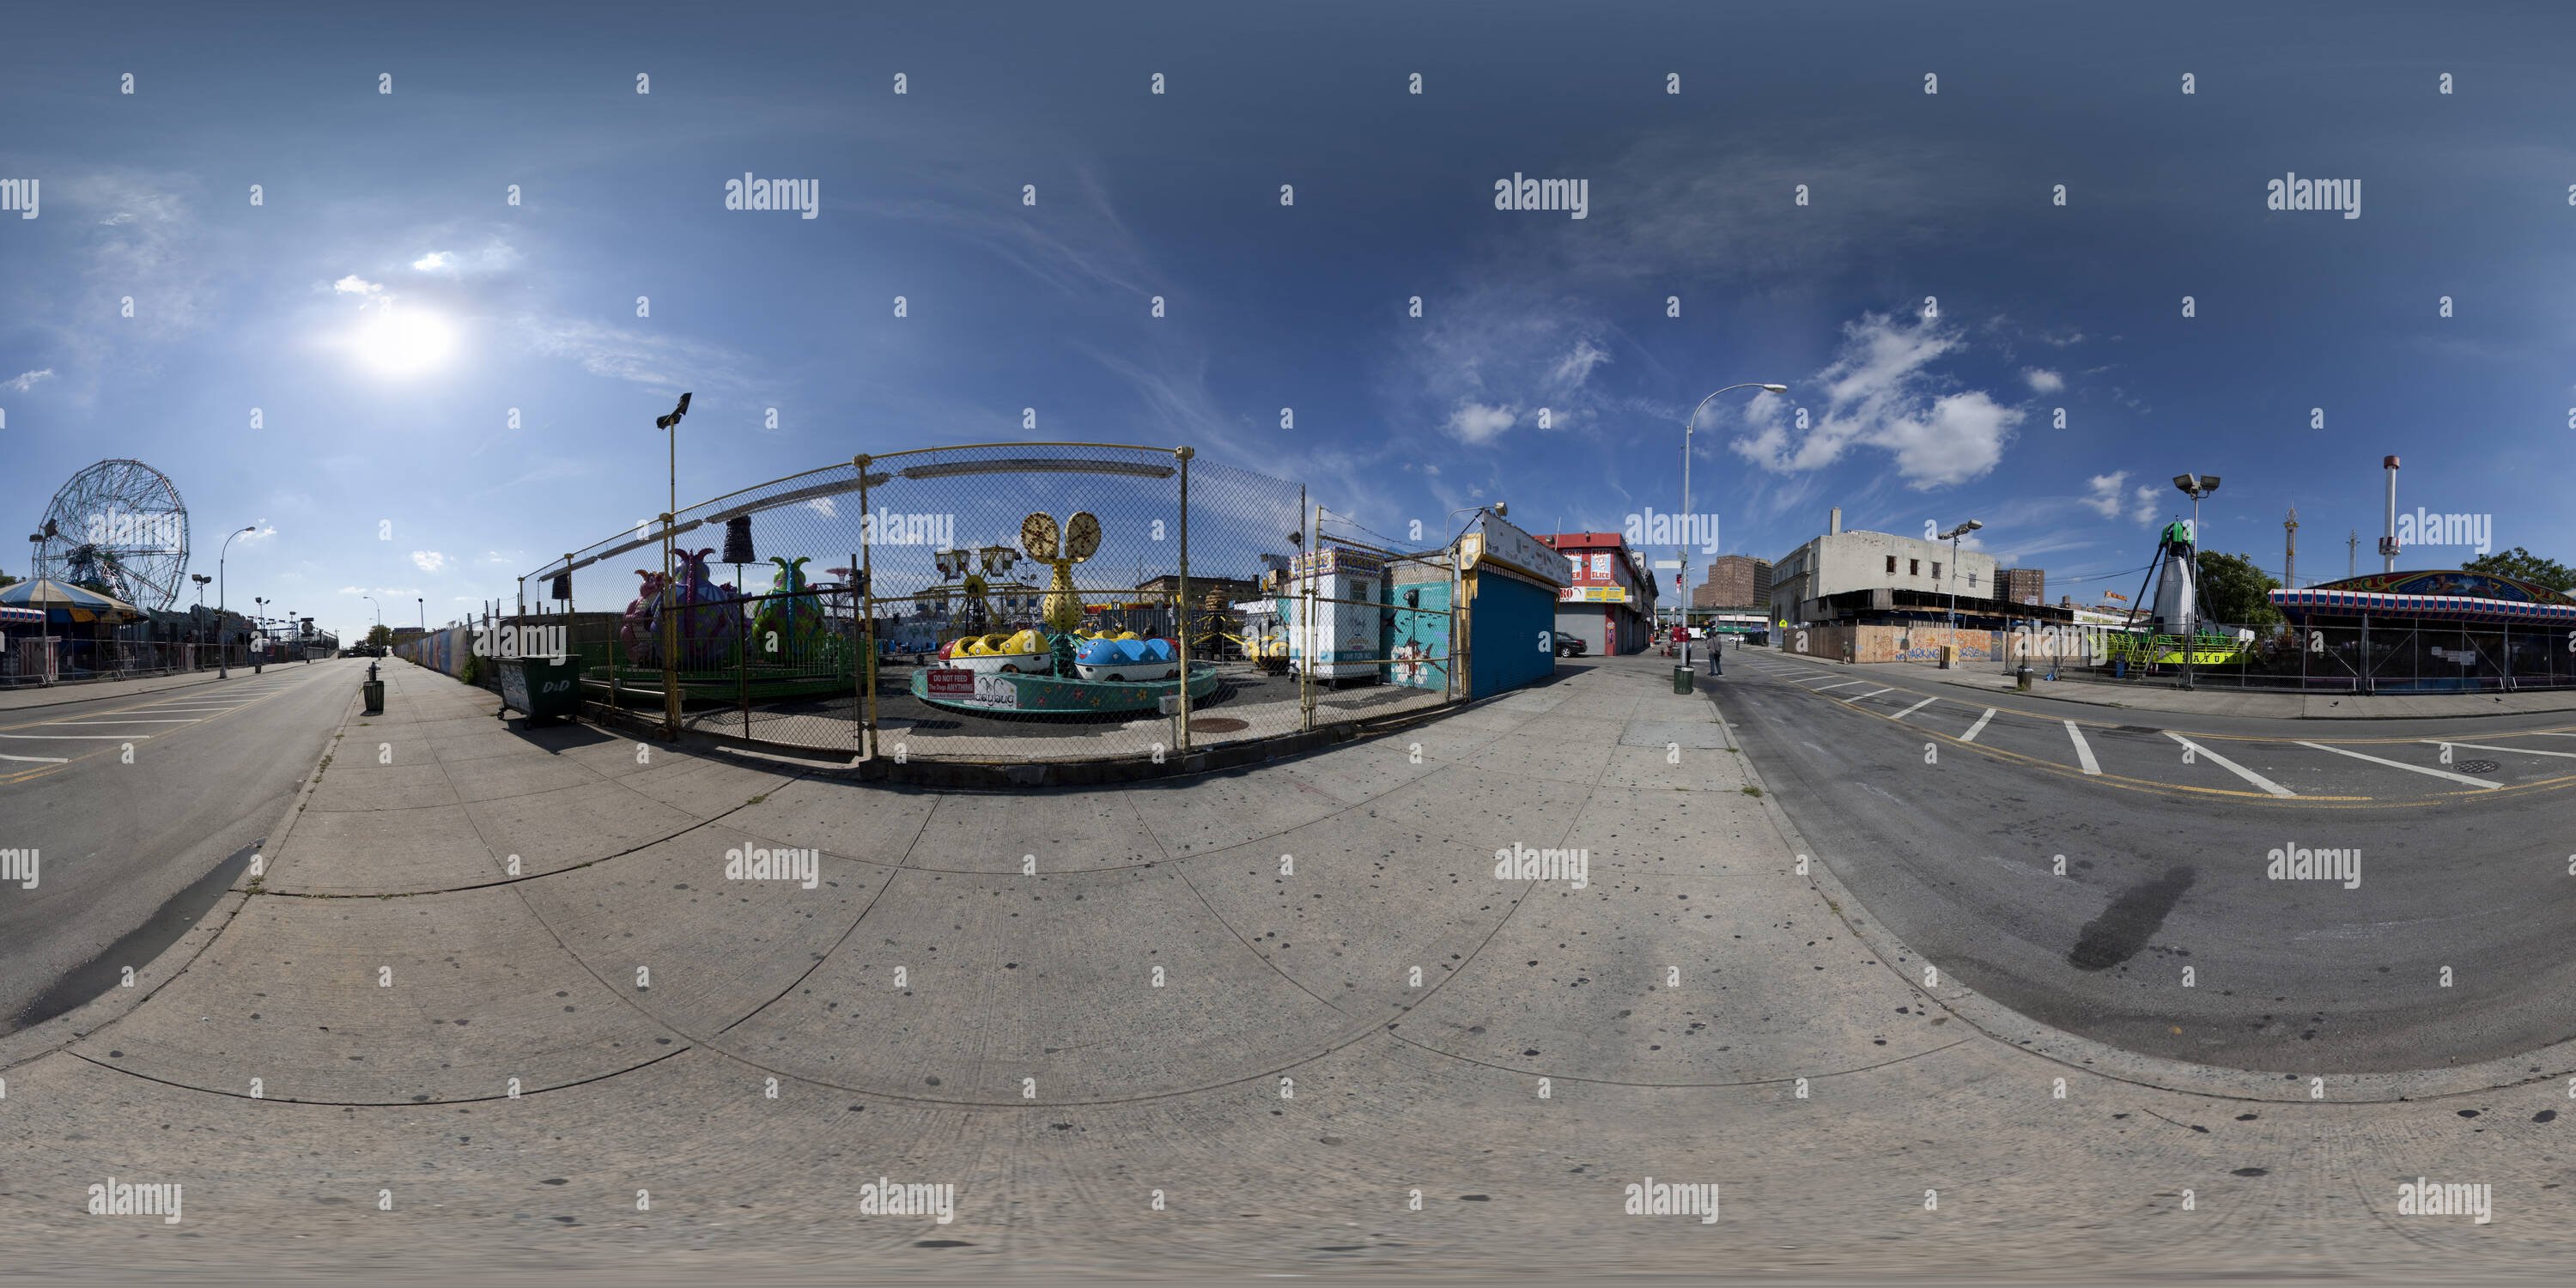 Vue panoramique à 360° de Coney Island